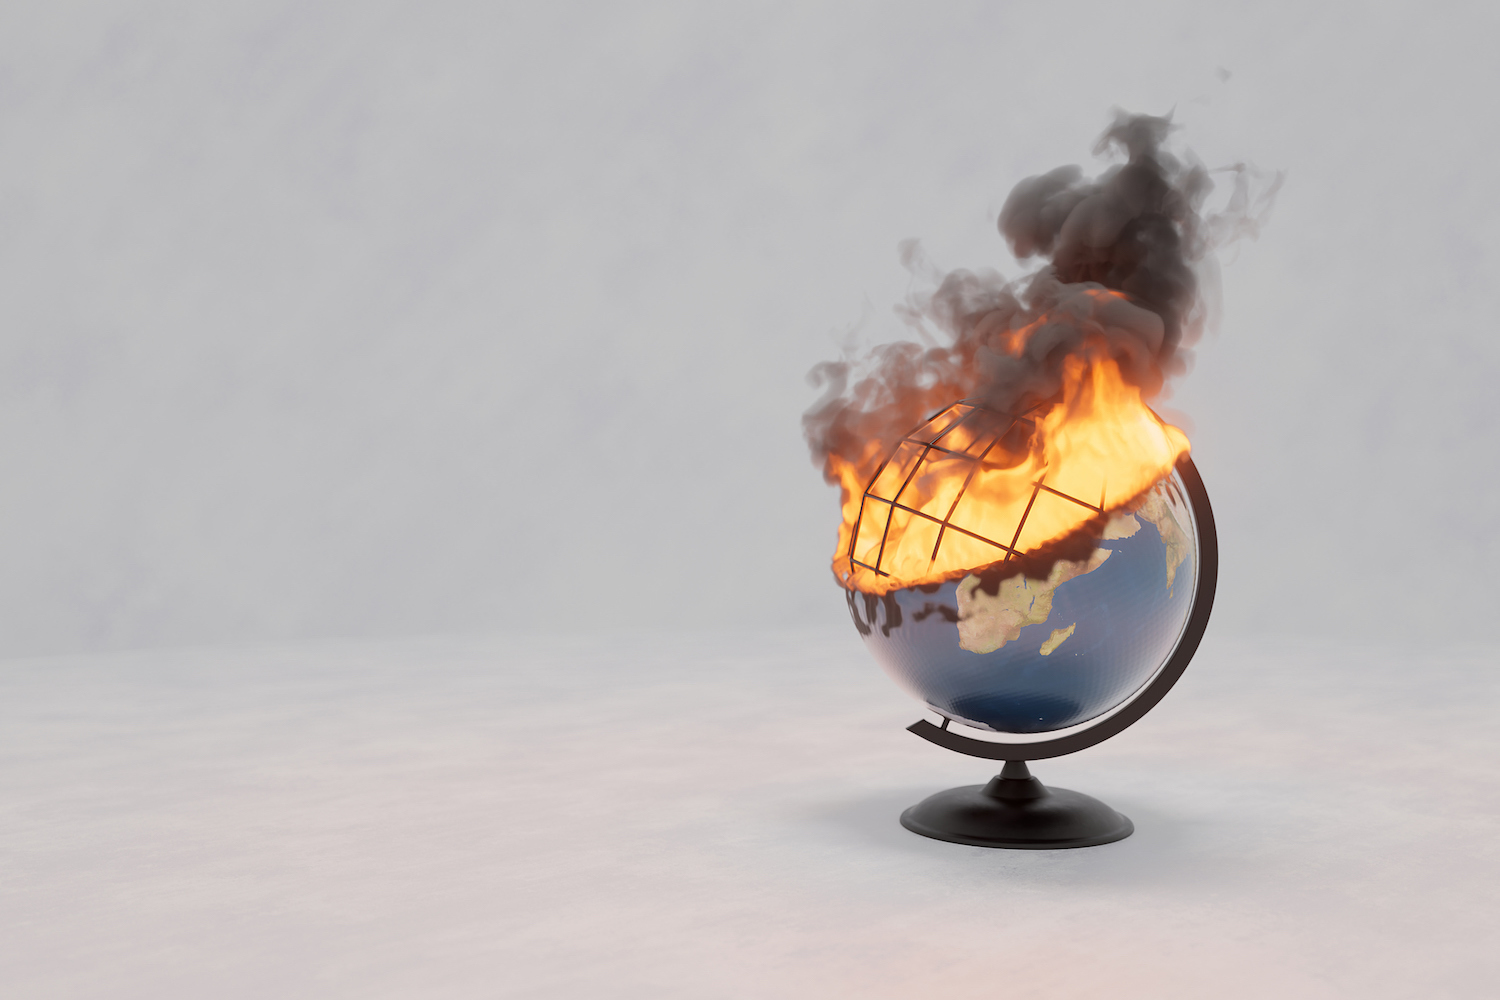 Dünya küresinin kağıt modeli yanıyor, izole edilmiş.  NASA'dan elementler, 3 boyutlu illüstrasyon